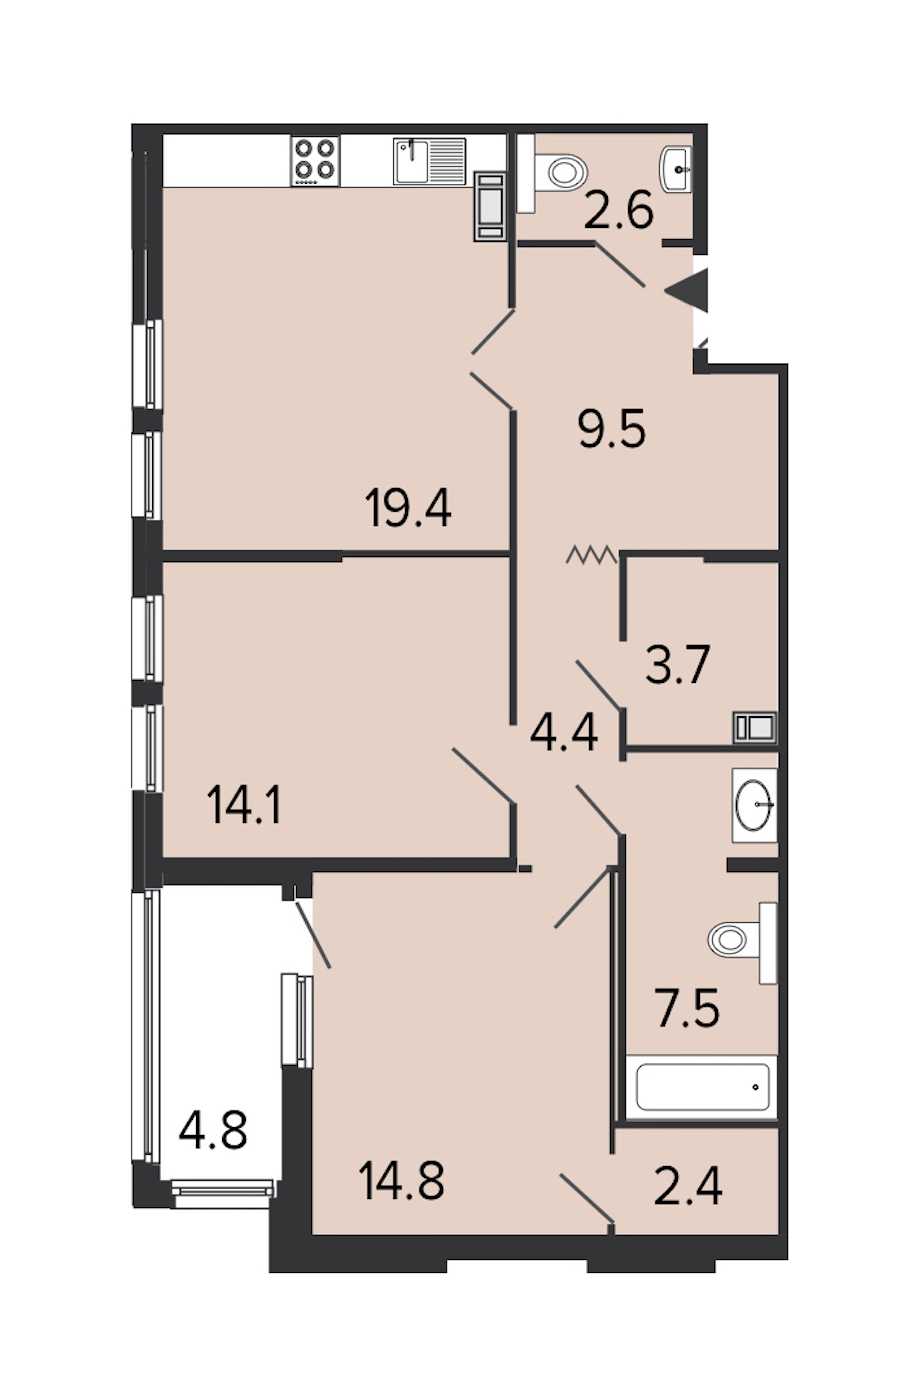 Двухкомнатная квартира в : площадь 78.4 м2 , этаж: 7 – купить в Санкт-Петербурге